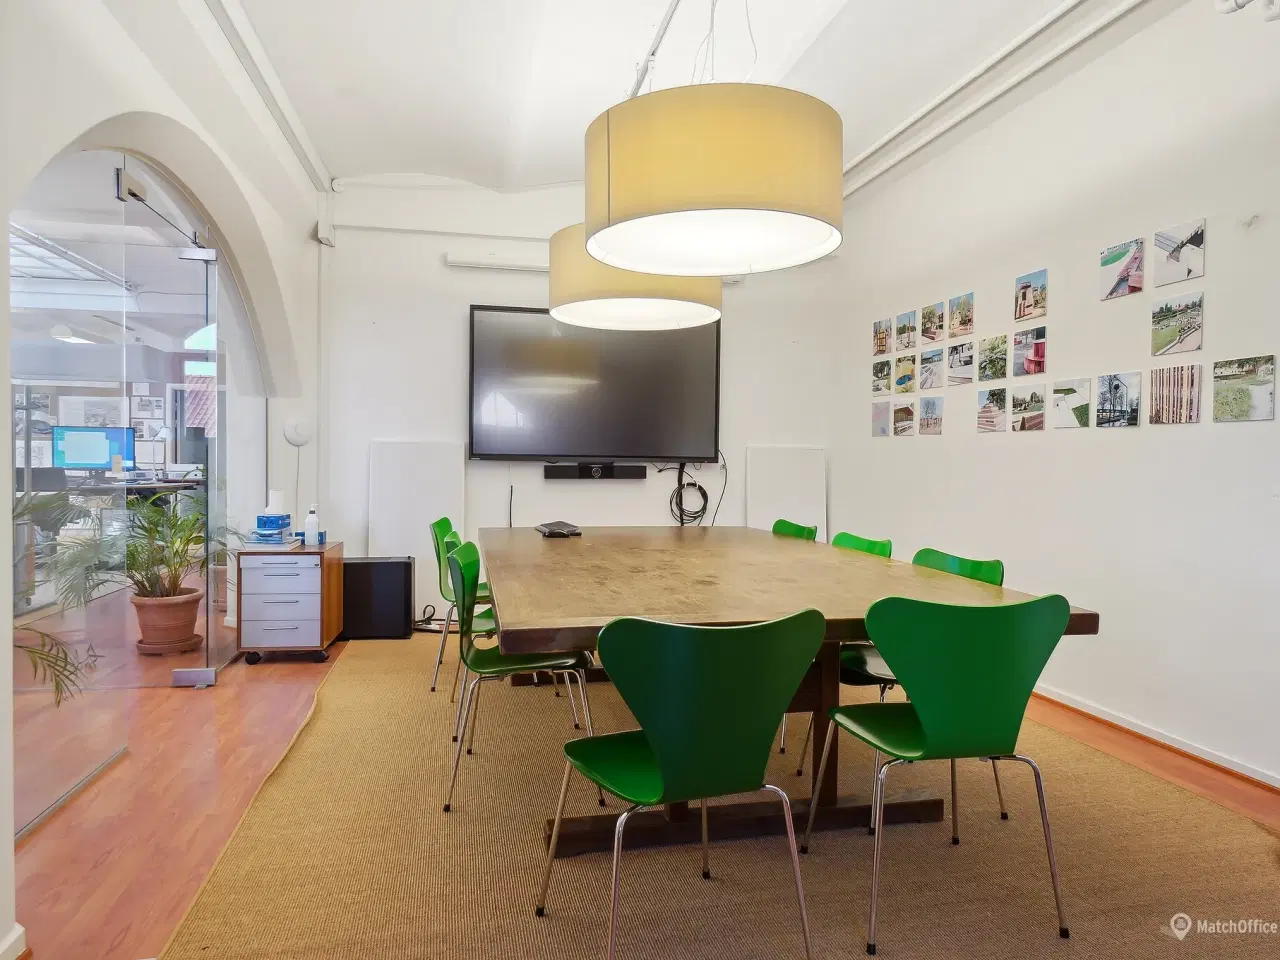 Billede 3 - 339 m² storrumskontor med flere kontorer og mødelokaler udlejes i Kongensgade i Odense City